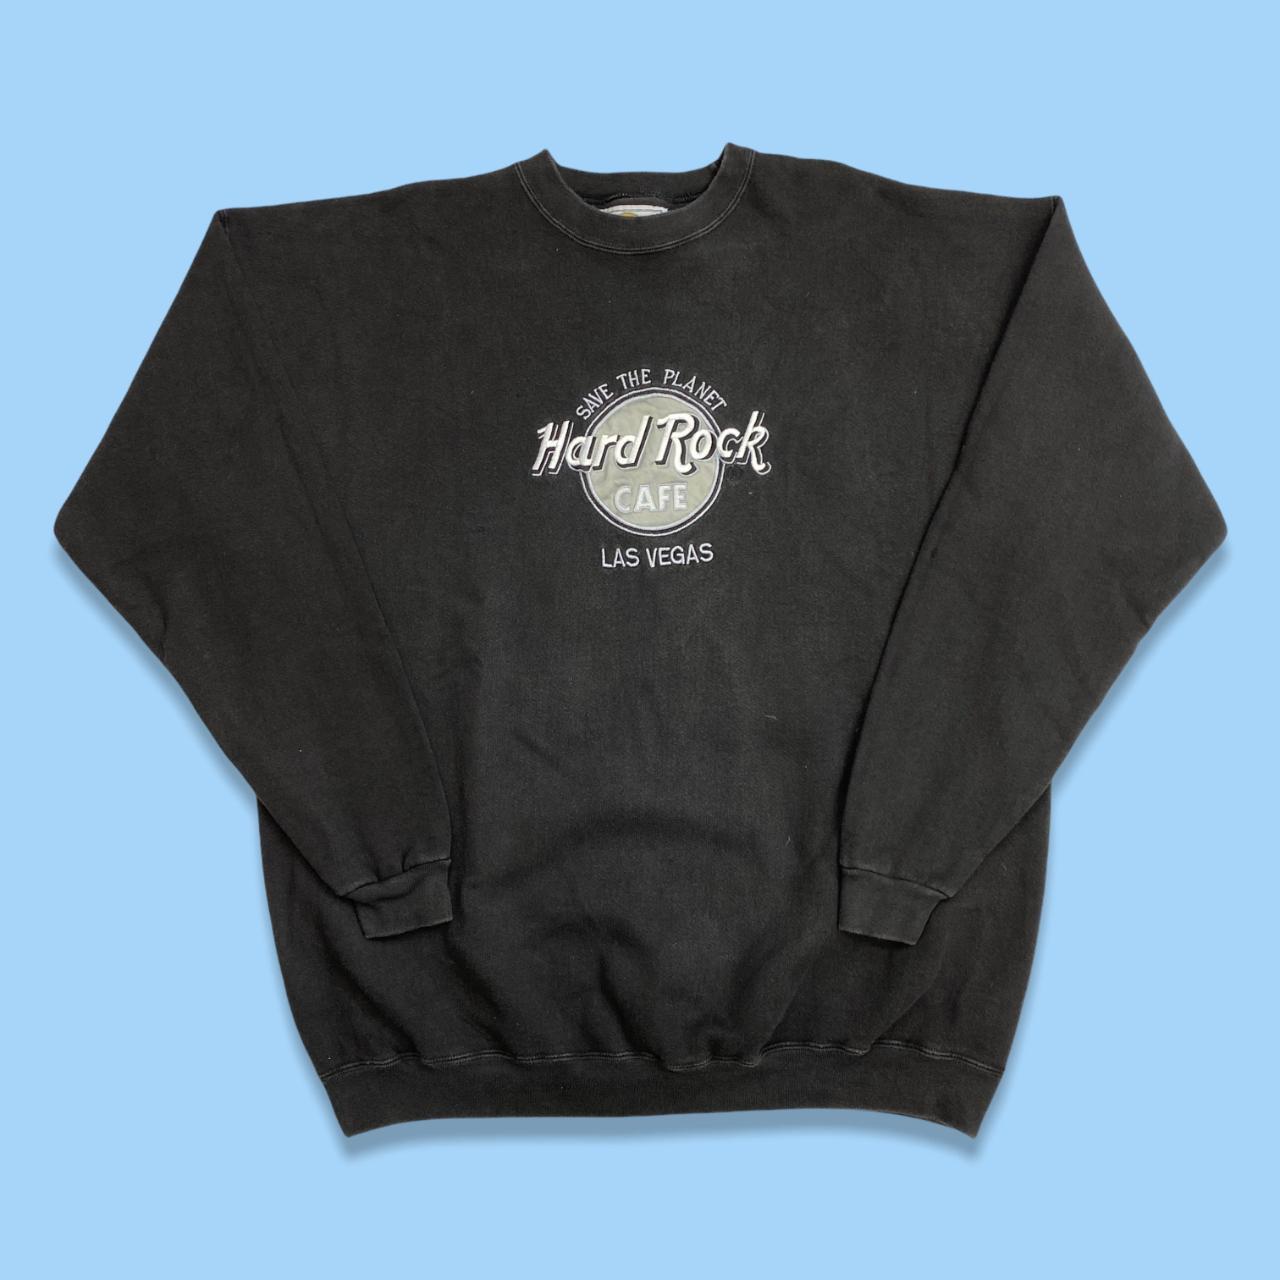 Vintage Hard Rock Cafe Las Vegas sweatshirt in black... - Depop